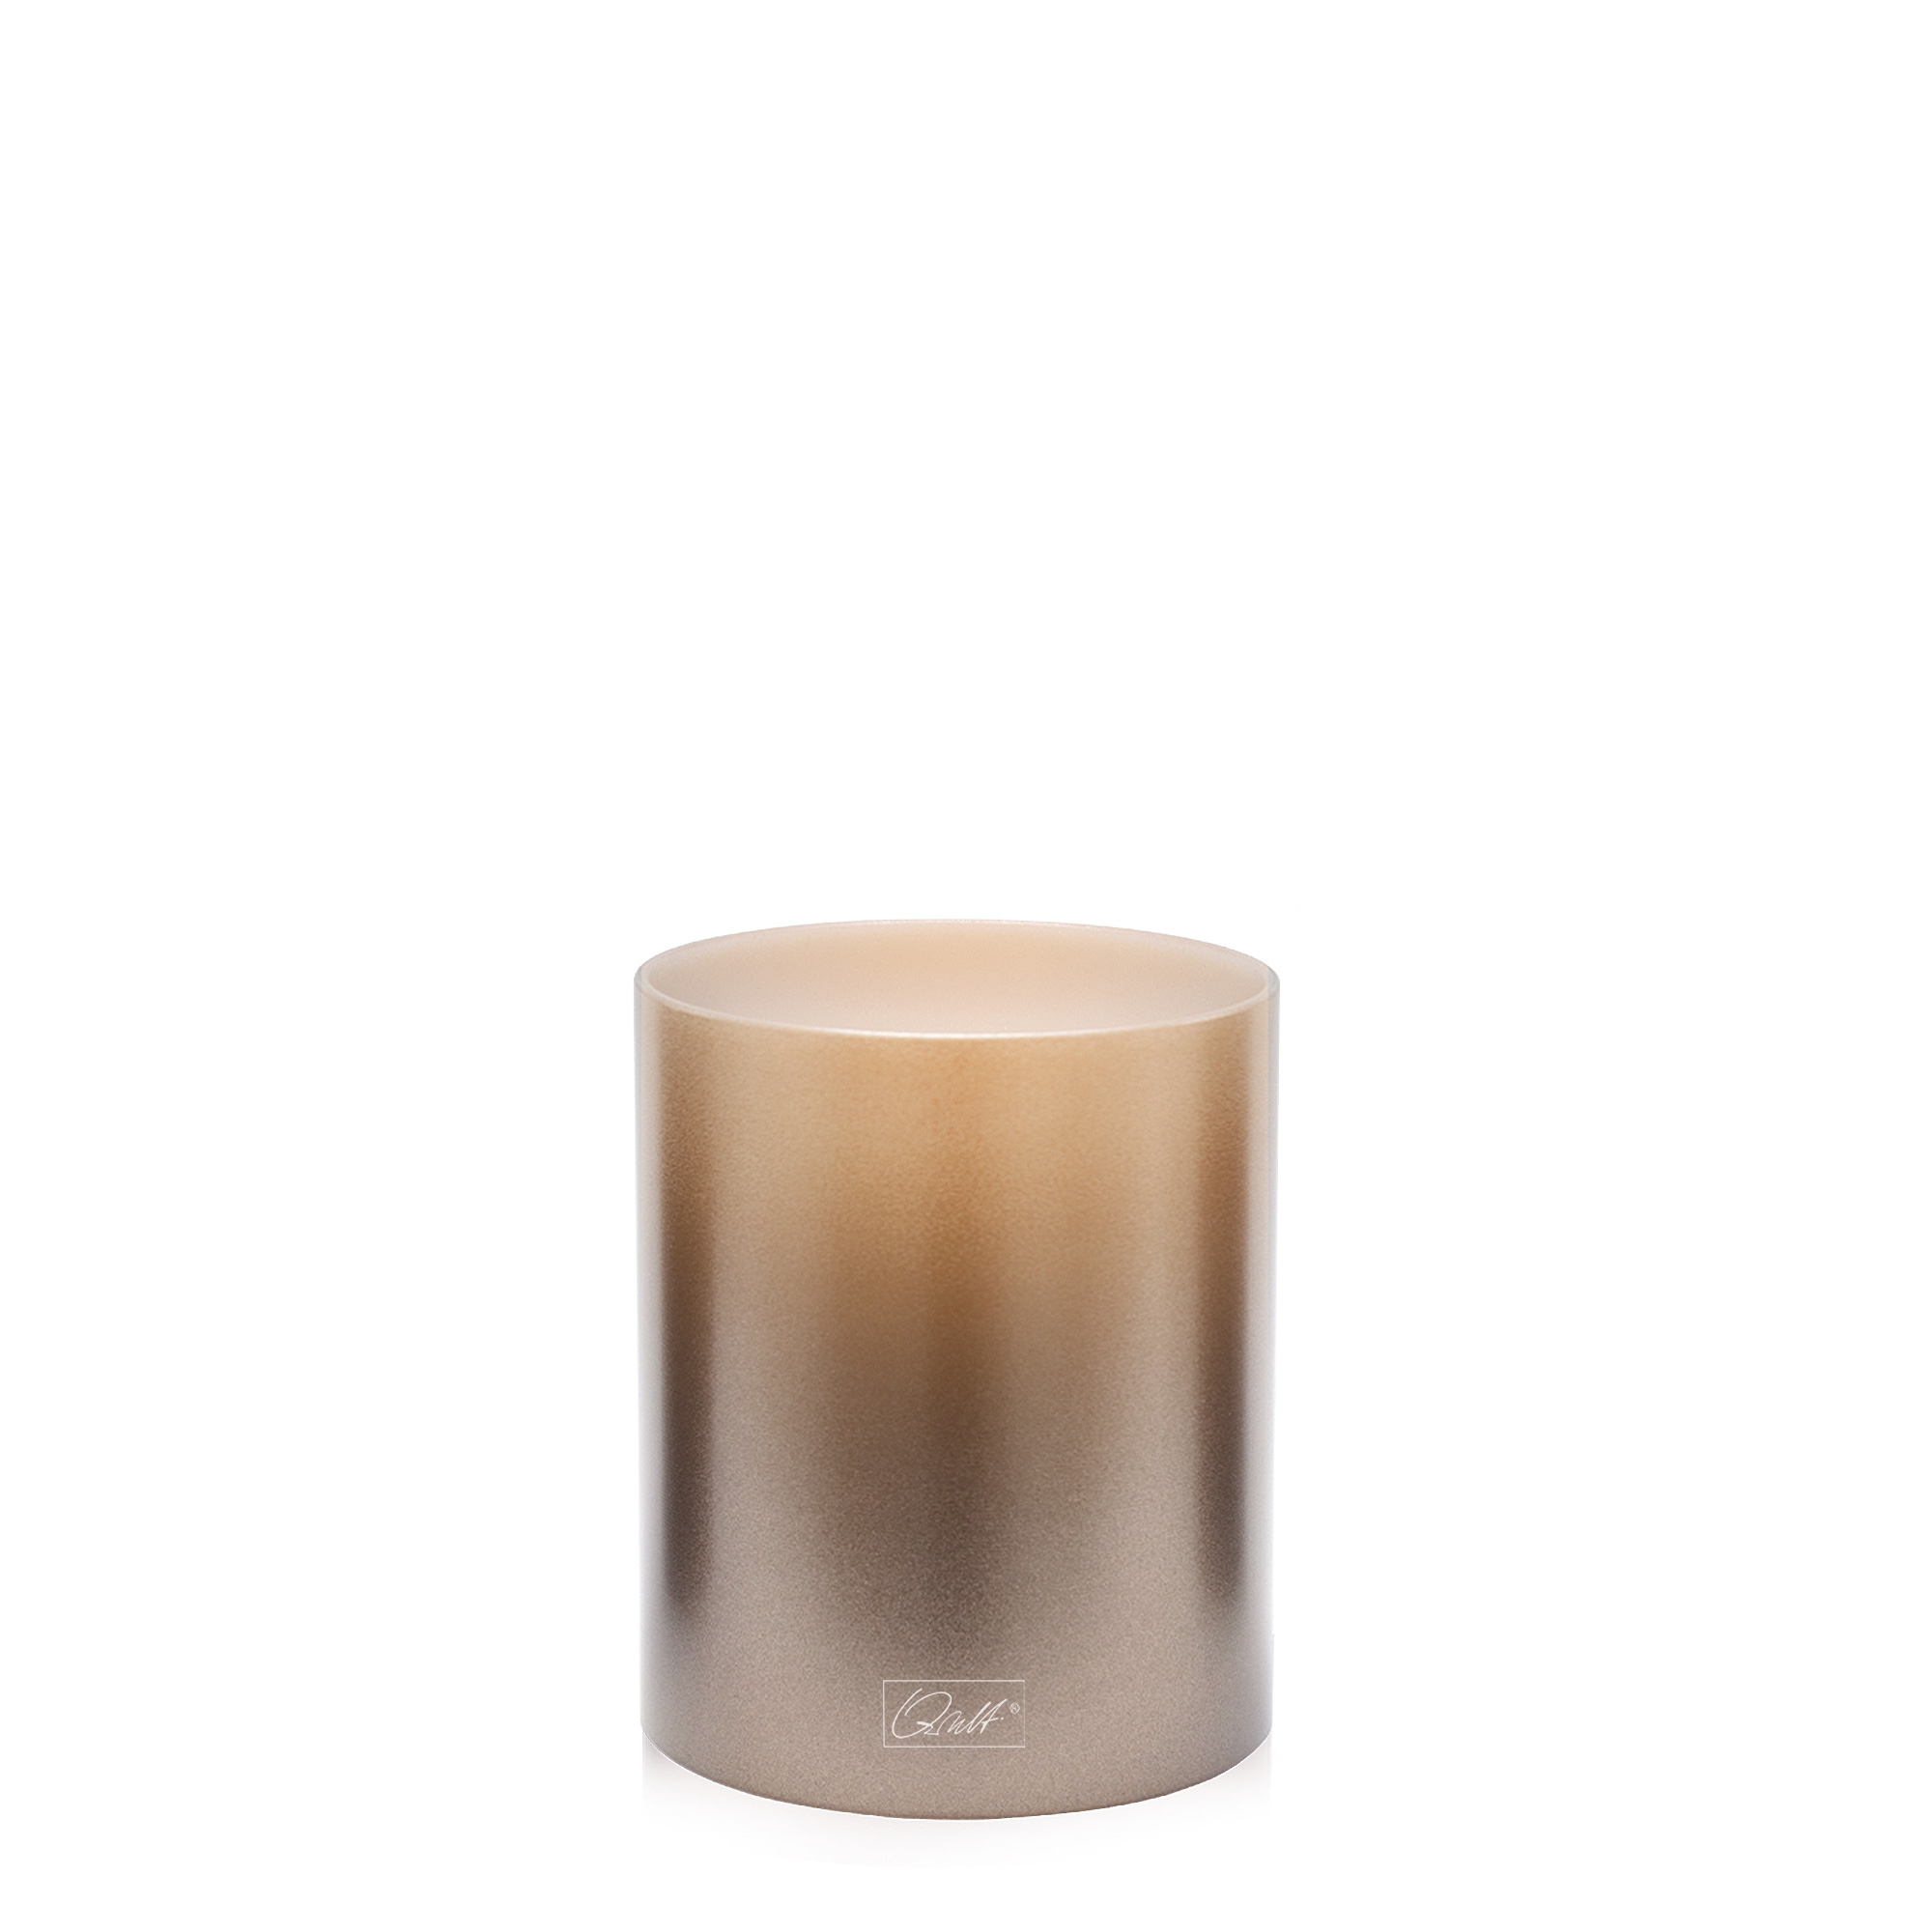 Qult Farluce Inside Metallic  - Tealight Candle Holder  - Bronze